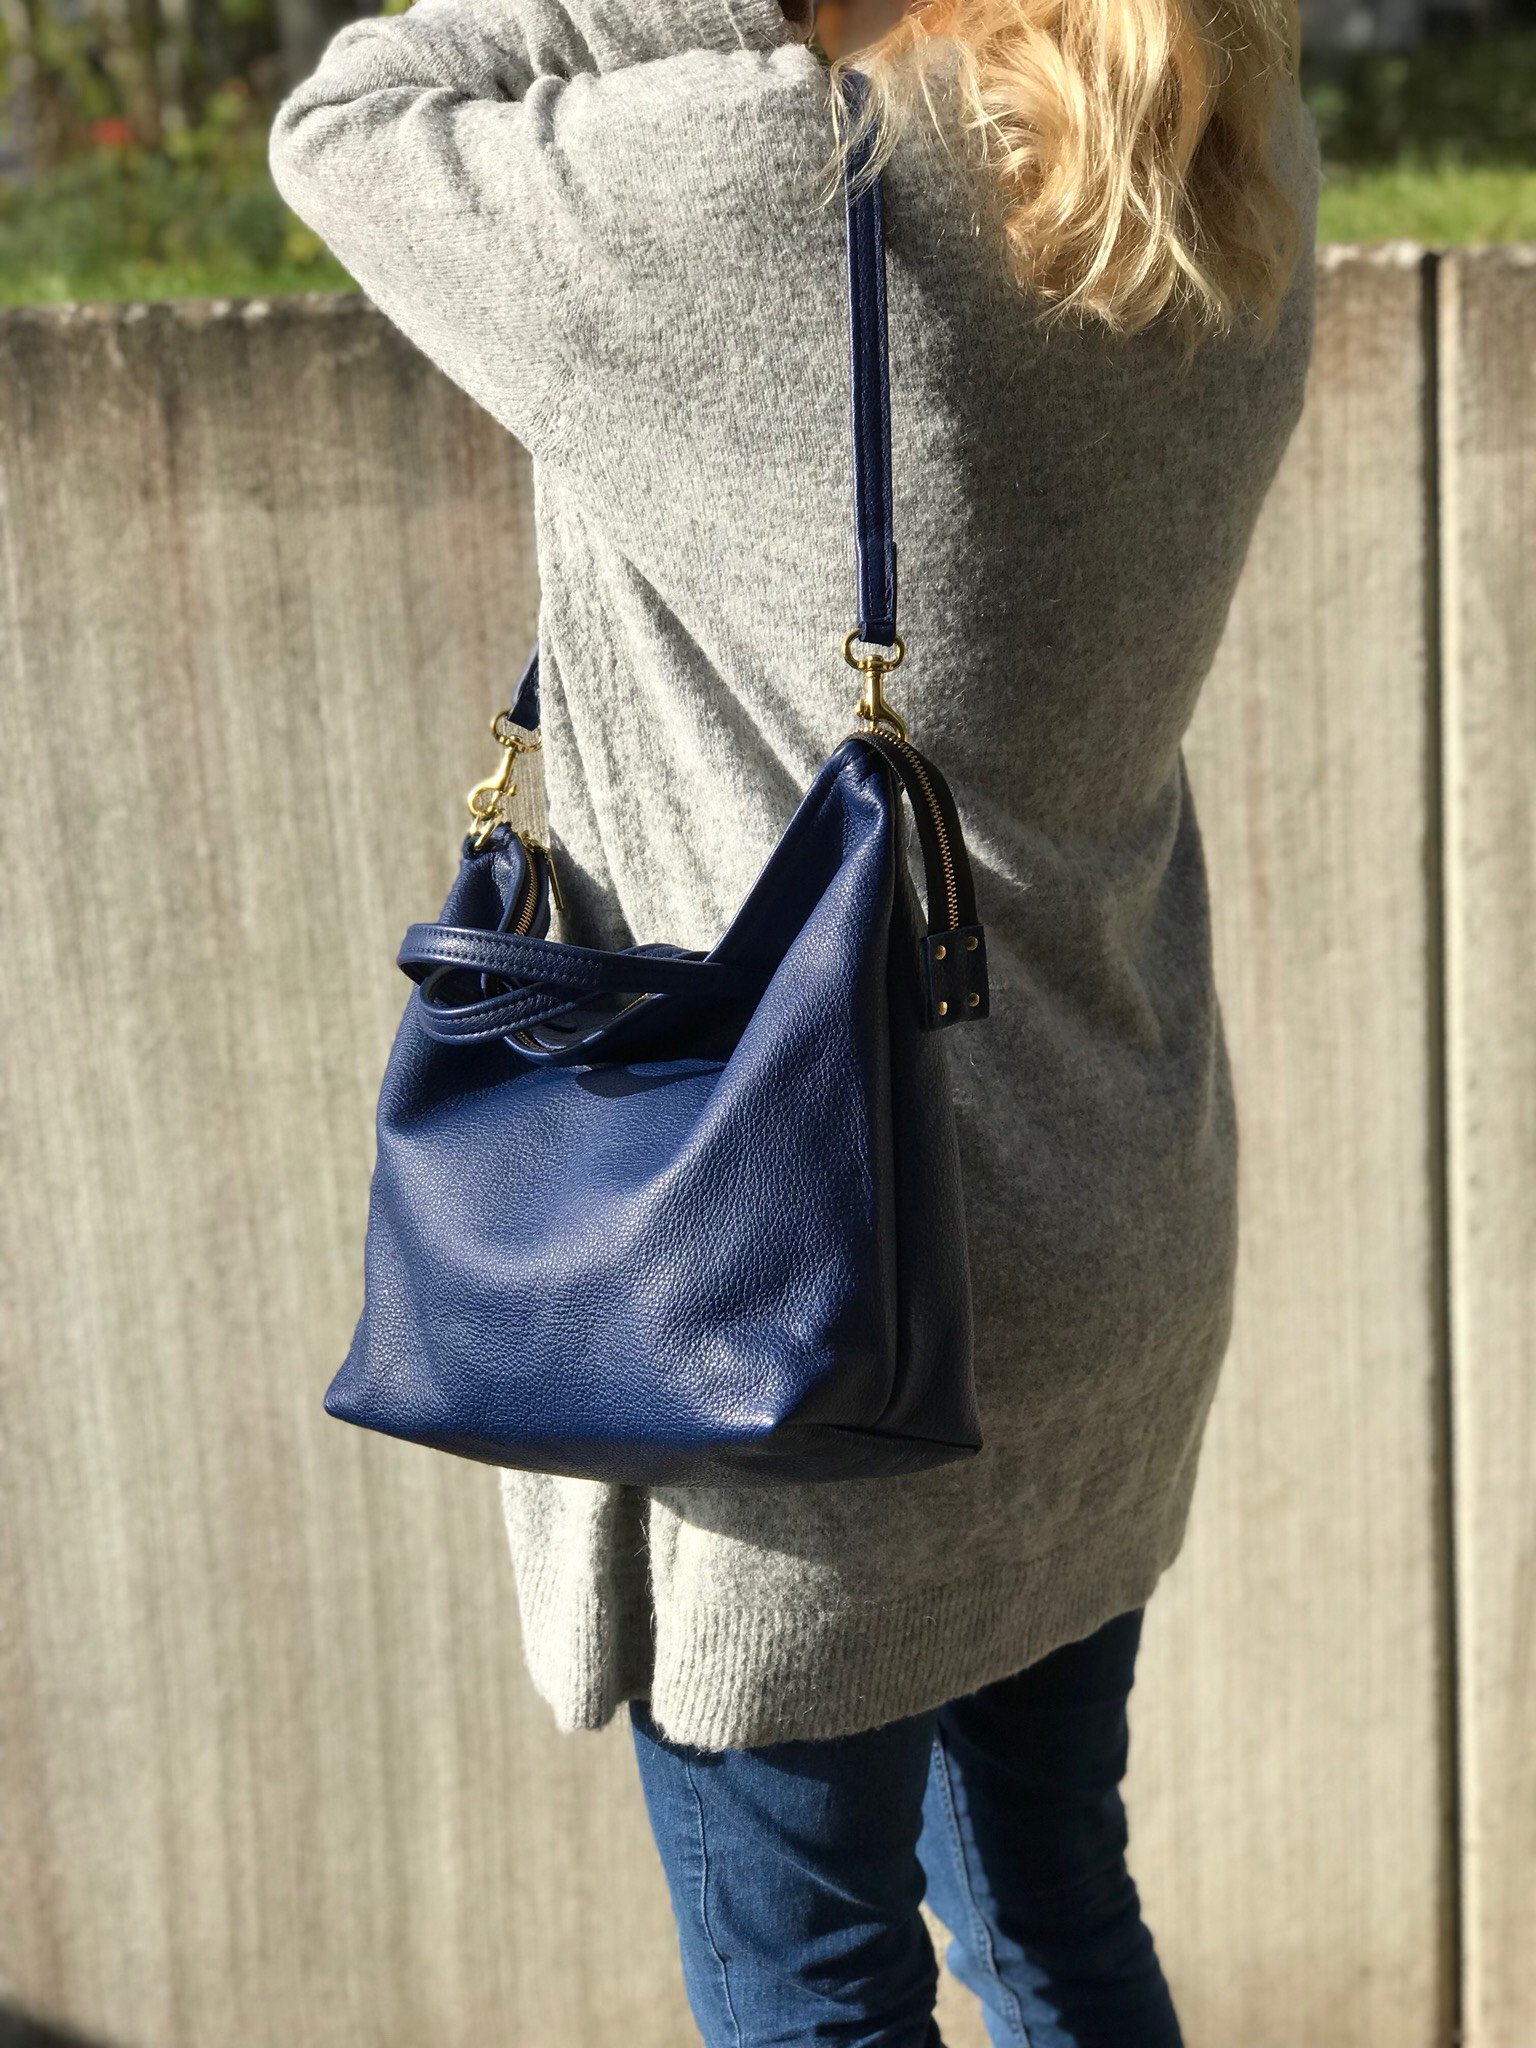 New Tote Bag w/ Zipper - Blue